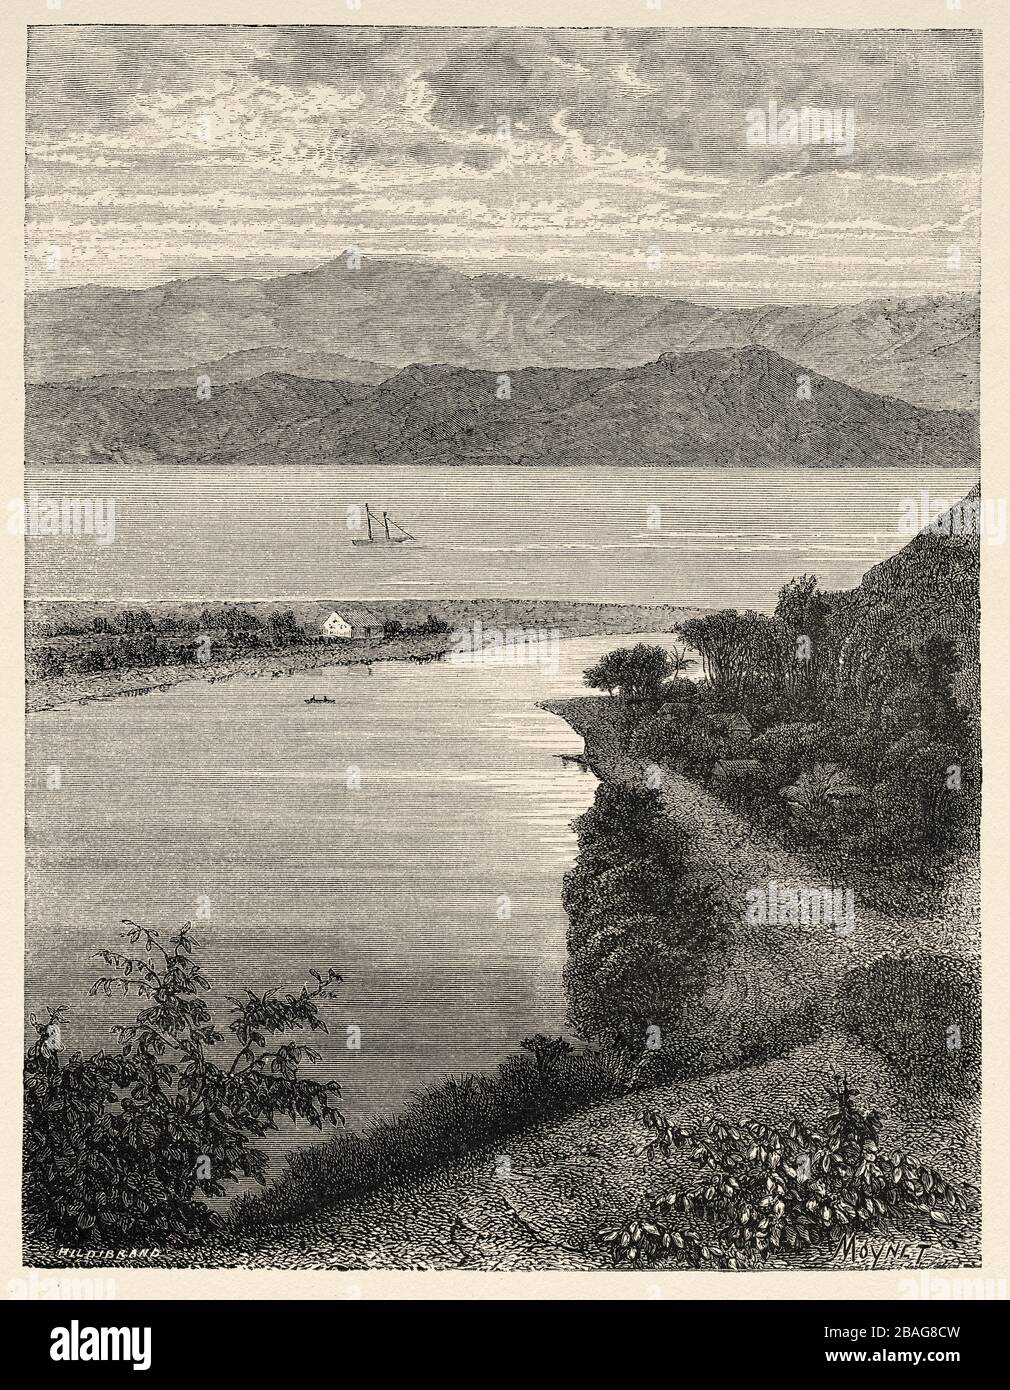 Vista panoramica della costa dell'isola delle Hawaii. Hawaii, Stati Uniti. Gita alle Isole Hawaii 1855 di Charles de Varigny, avventuriero francese Foto Stock